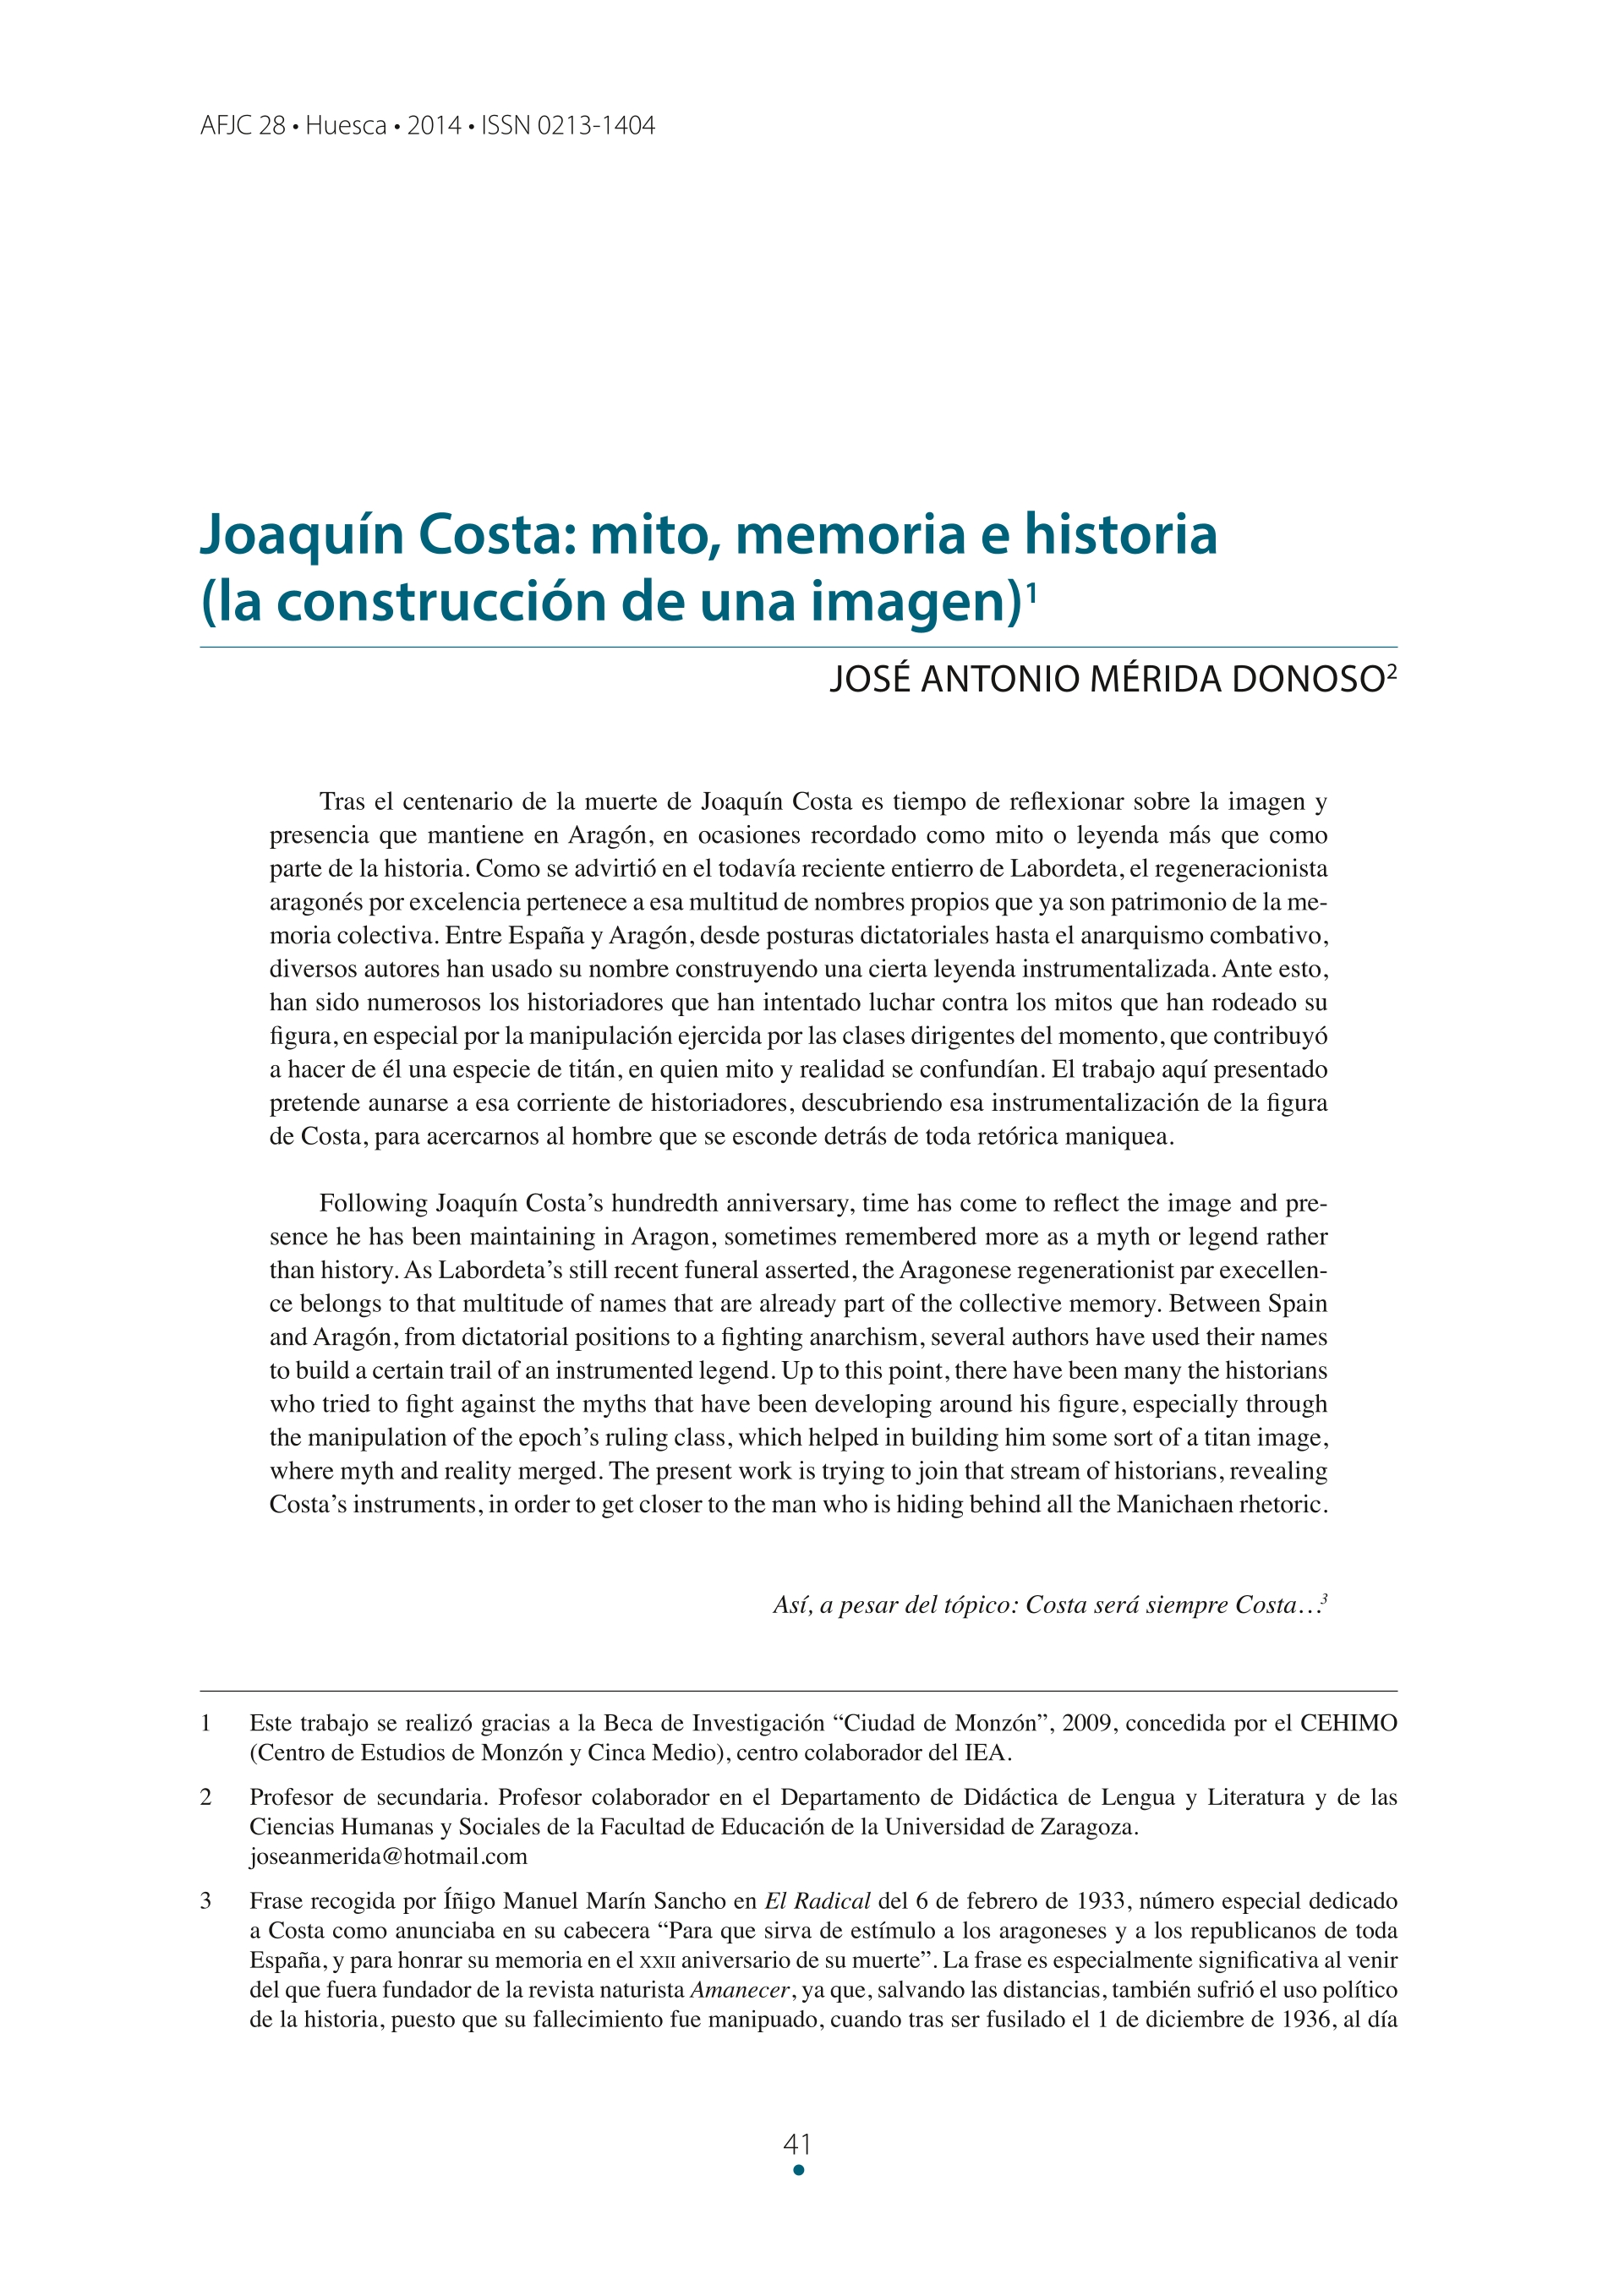 Joaquín Costa: mito, memoria e historia (la construcción de una imagen)